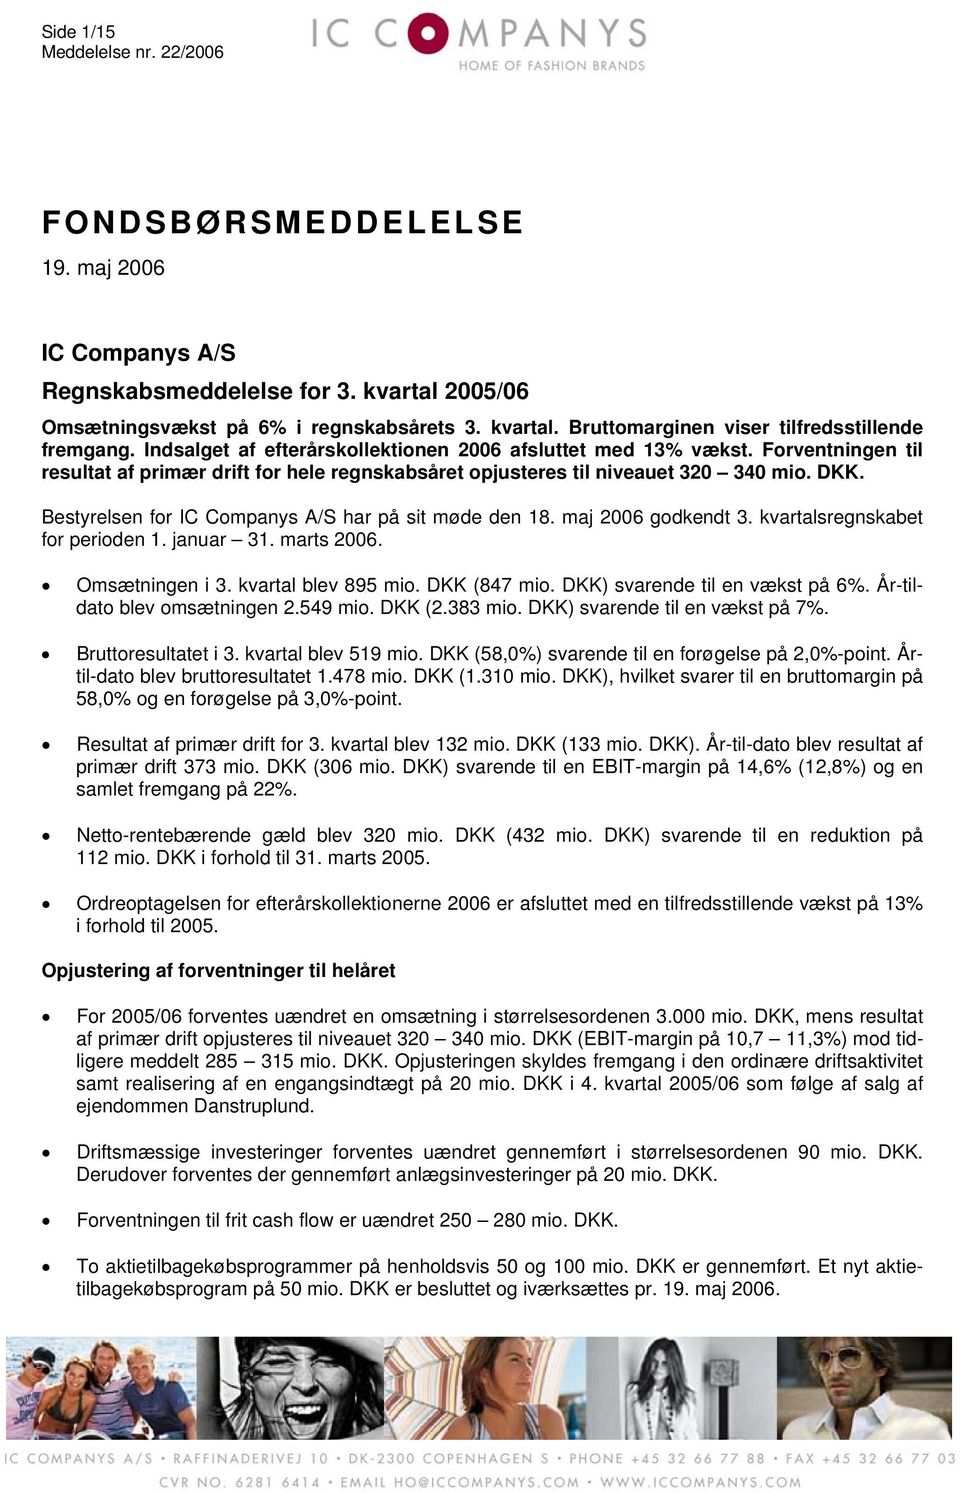 Bestyrelsen for IC Companys A/S har på sit møde den 18. maj 2006 godkendt sregnskabet for perioden 1. januar 31. marts 2006. Omsætningen i blev 895 mio. DKK (847 mio. DKK) svarende til en vækst på 6%.